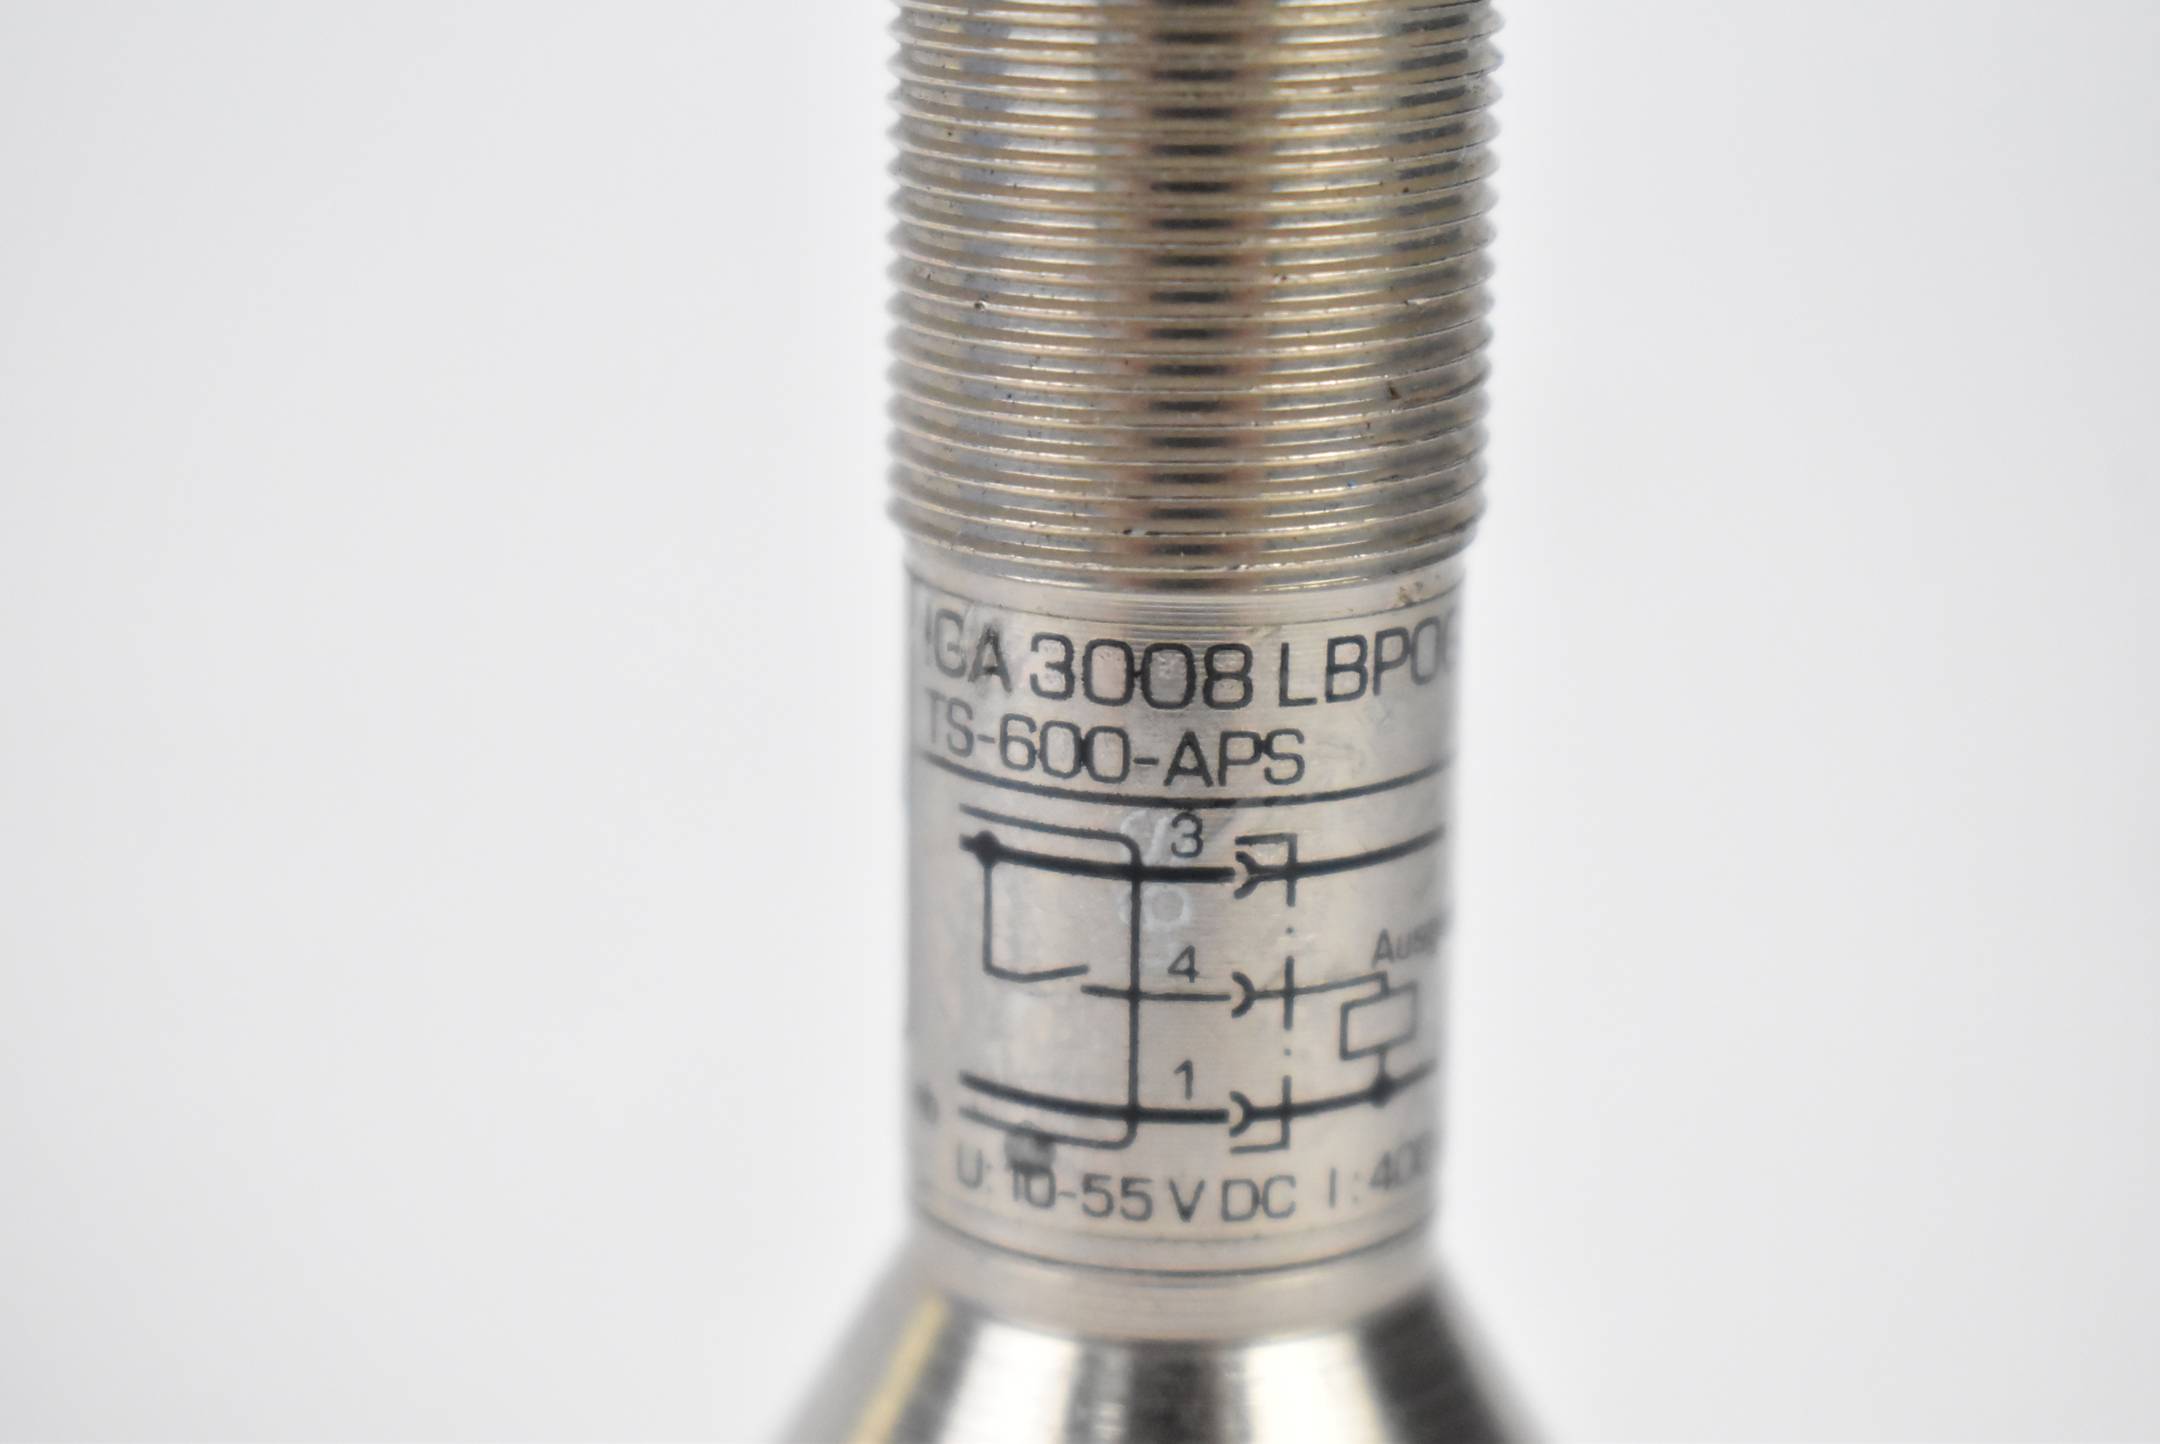 ifm electronic Induktiver Sensor IGA 3008 LBPOG TS-600-APS 